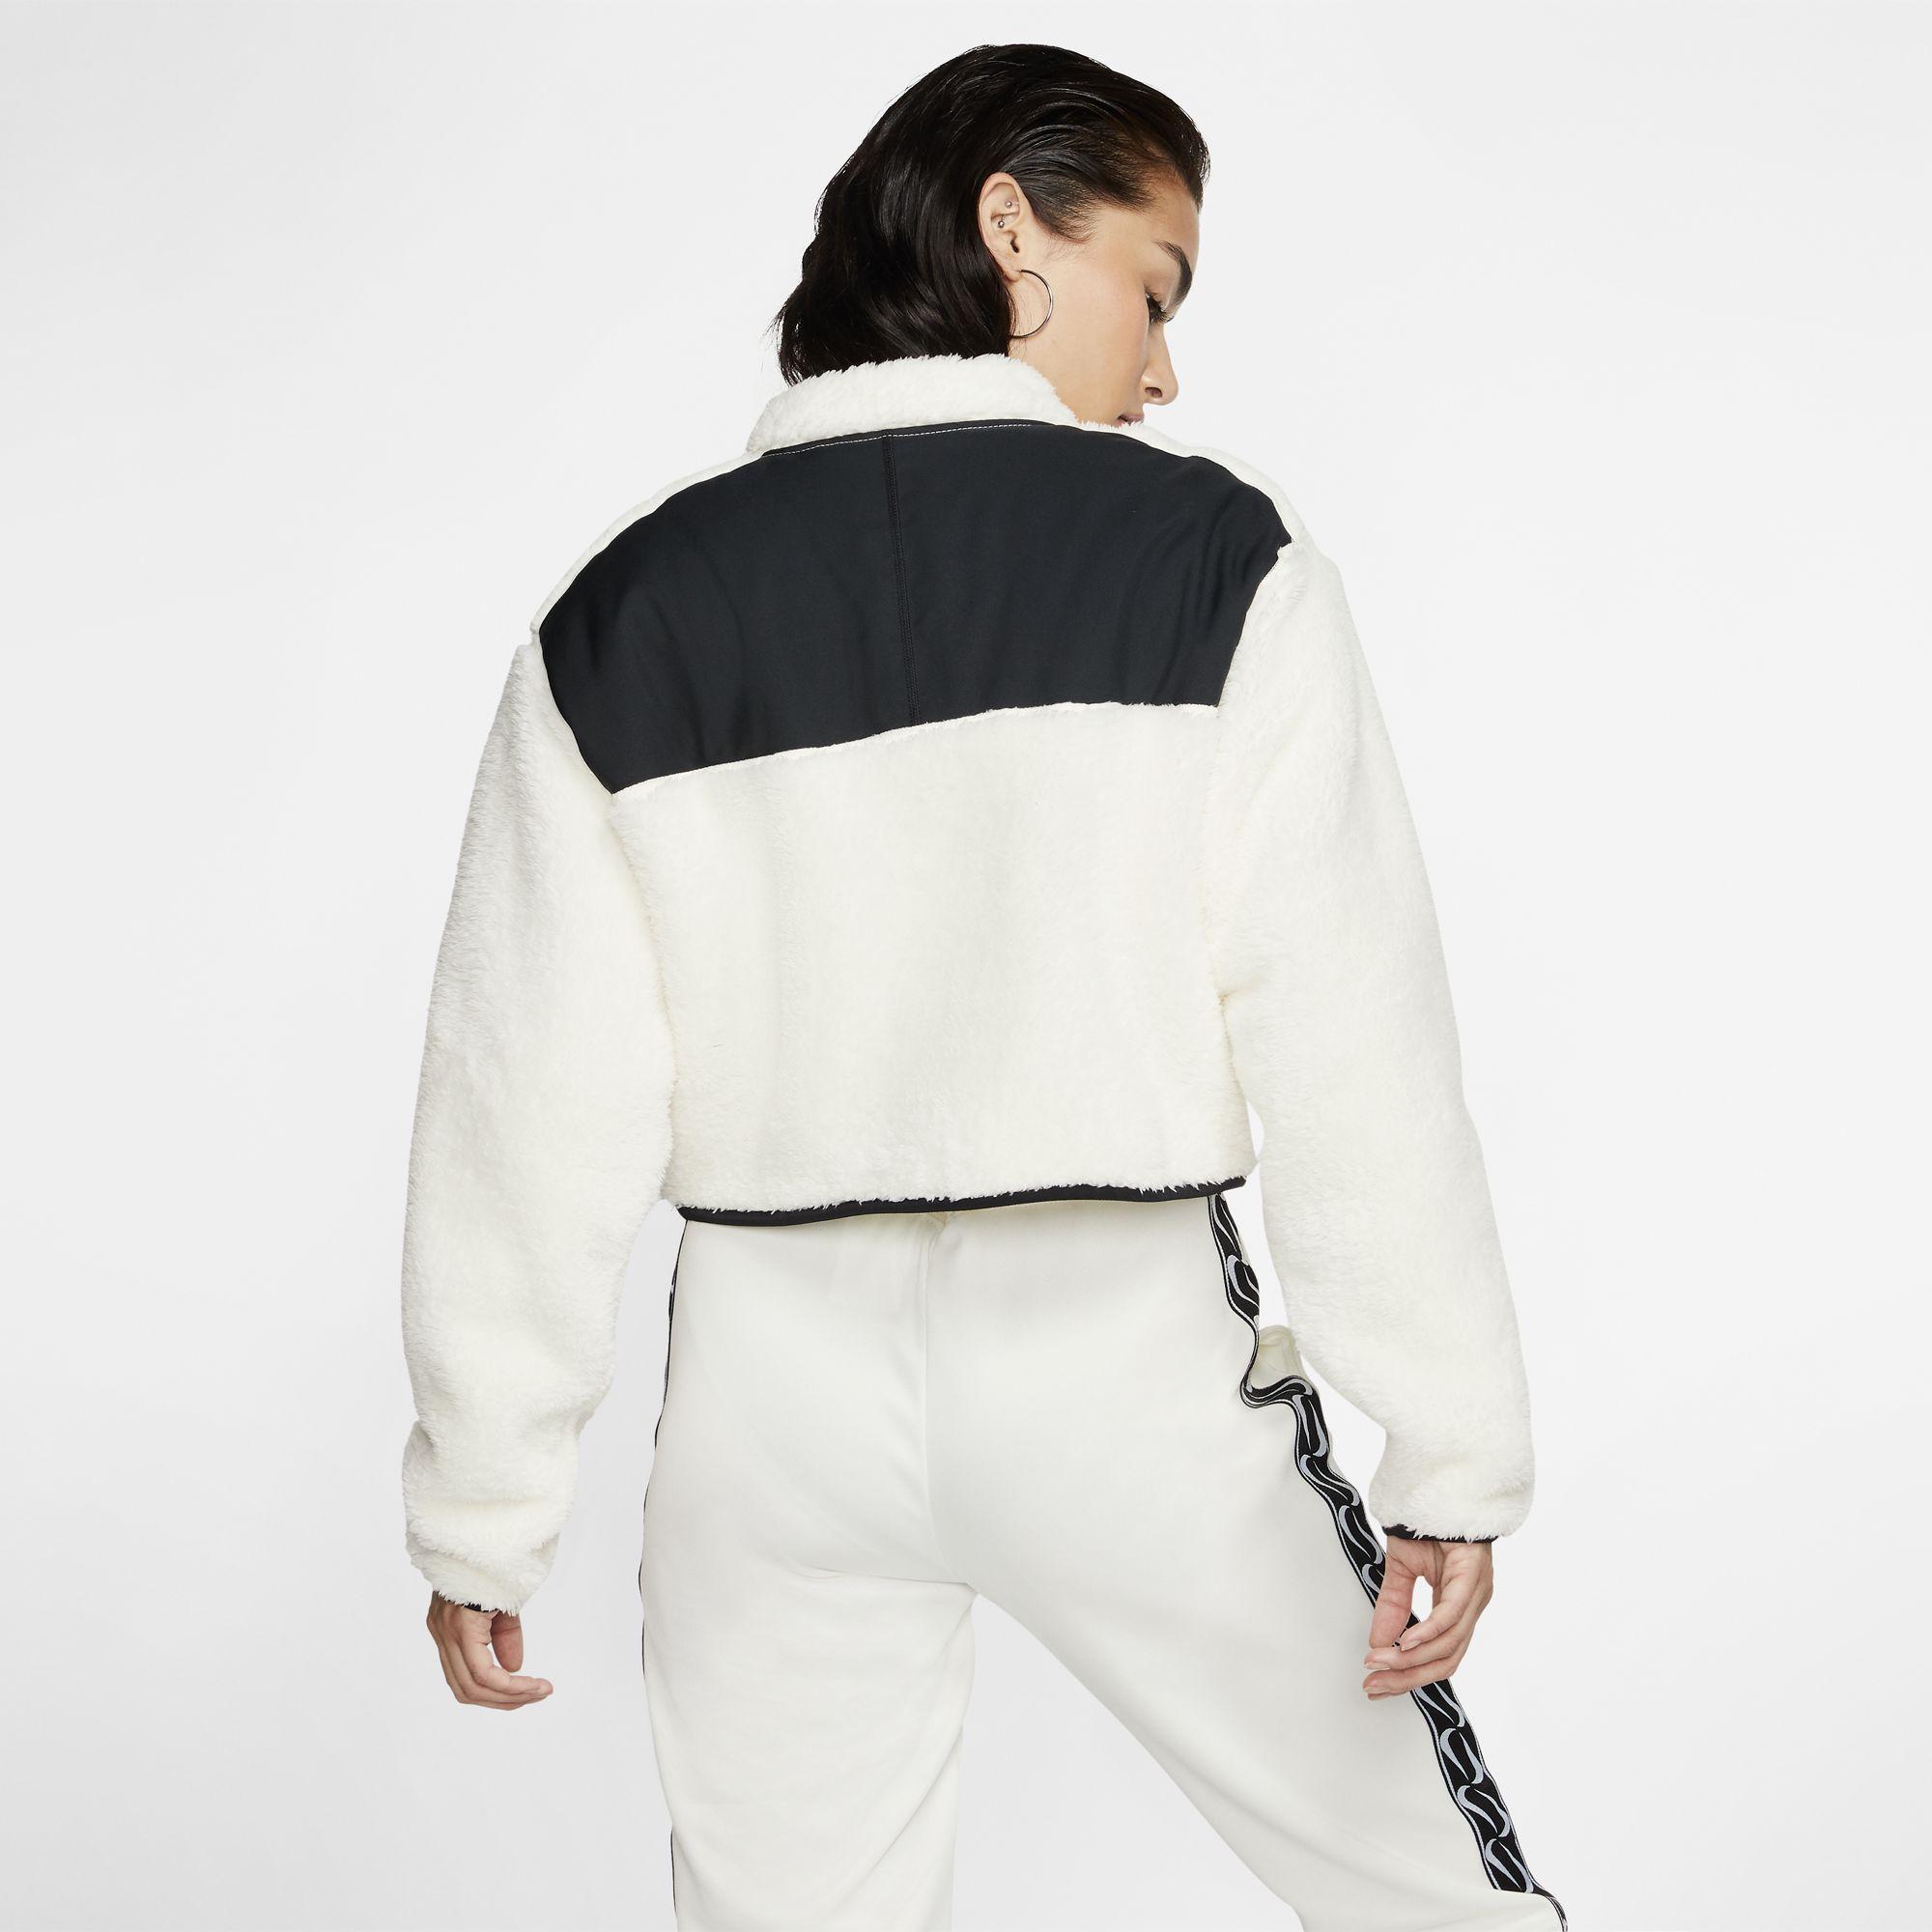 nike sportswear fleece quarter zip crop pullover